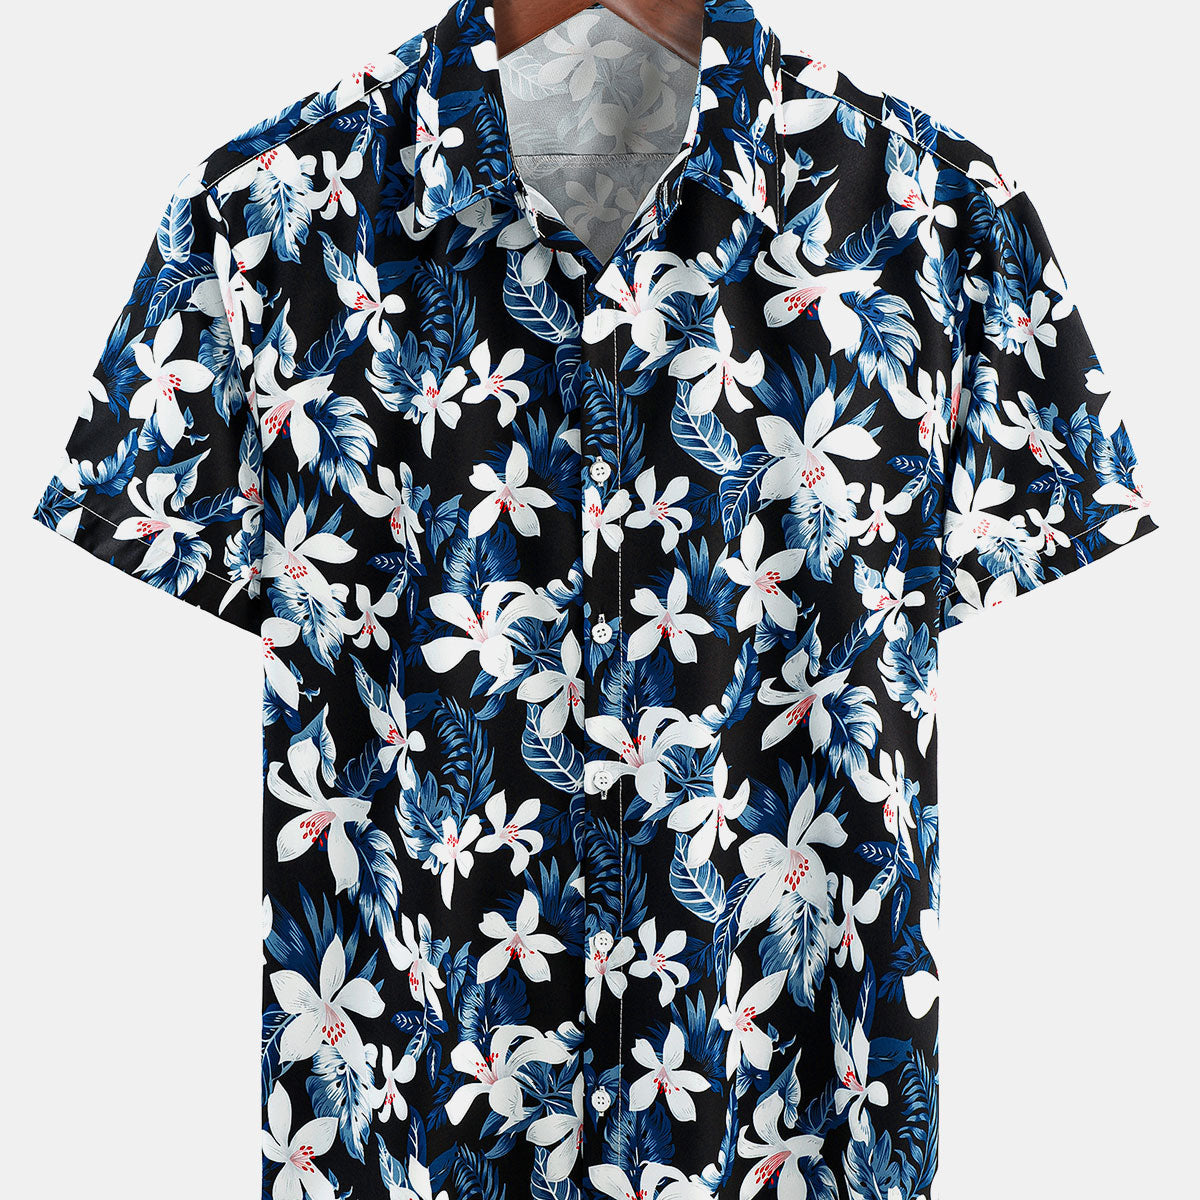 Men's Beach Holiday Floral Button Up Short Sleeve Summer Shirt